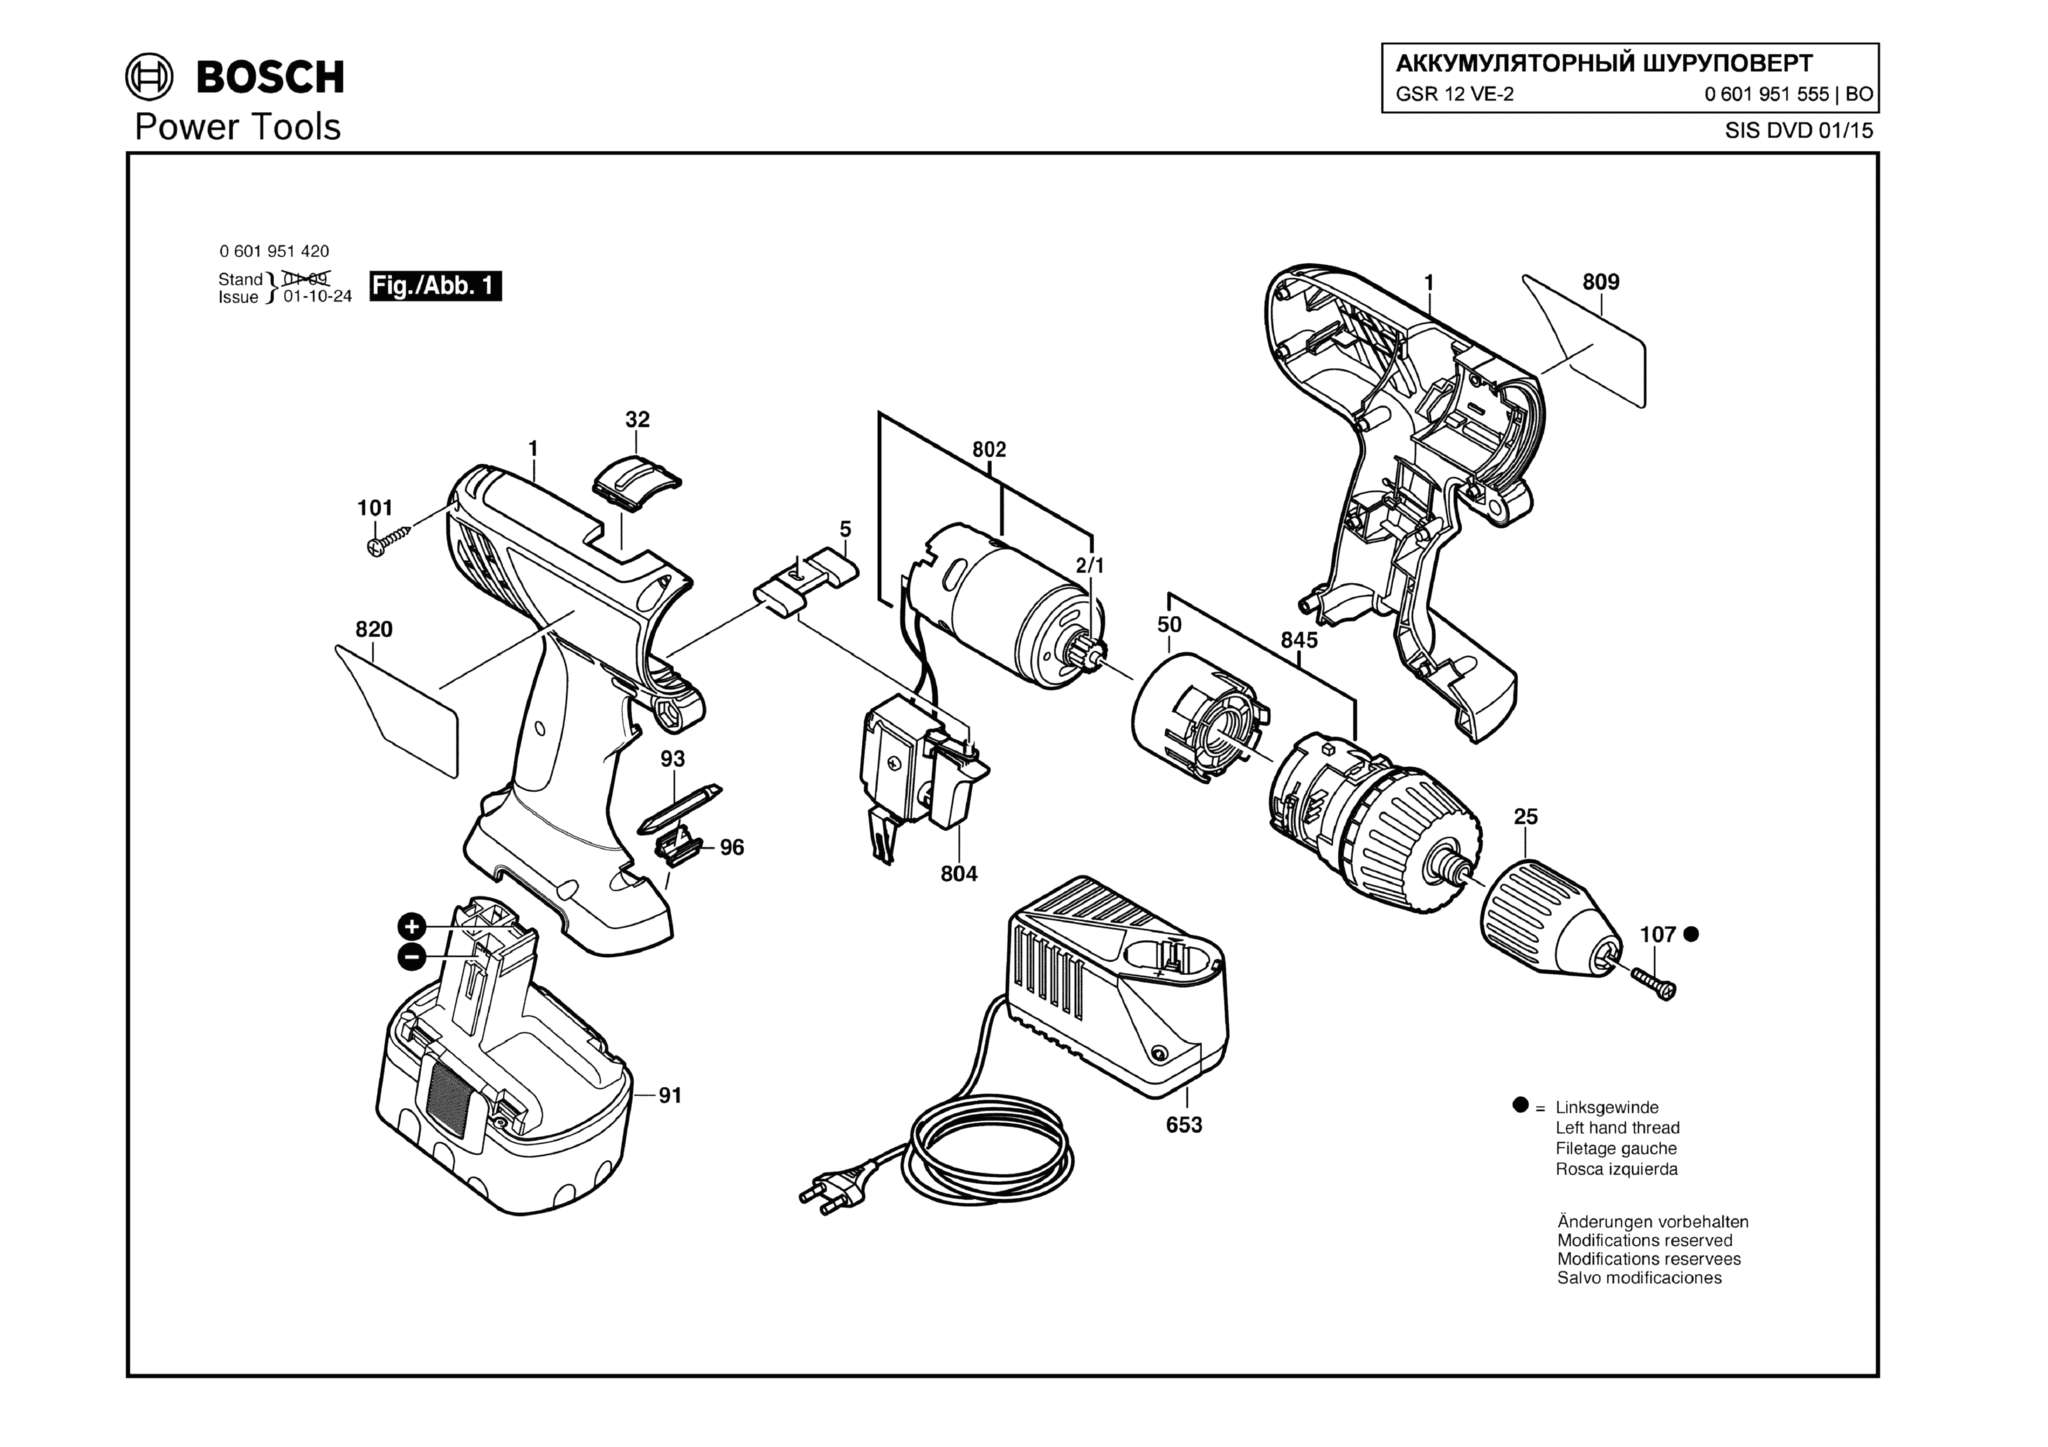 Запчасти, схема и деталировка Bosch GSR 12 VE-2 (ТИП 0601951555)